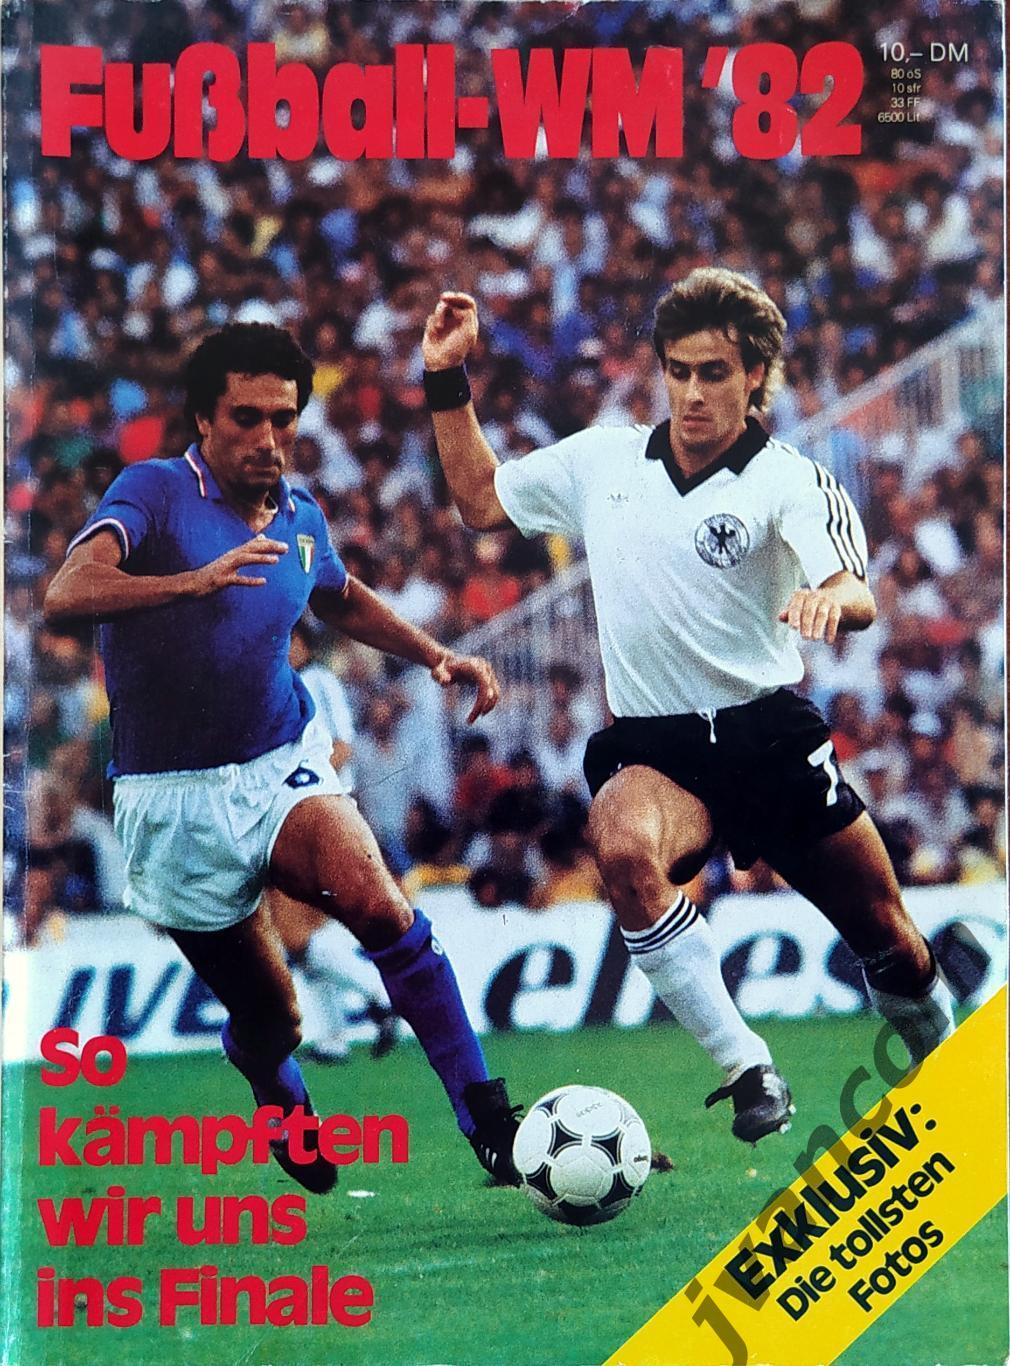 Fusball-WM*82 / Чемпионат Мира по футболу*82 в Испании. Вот так мы пробивались..